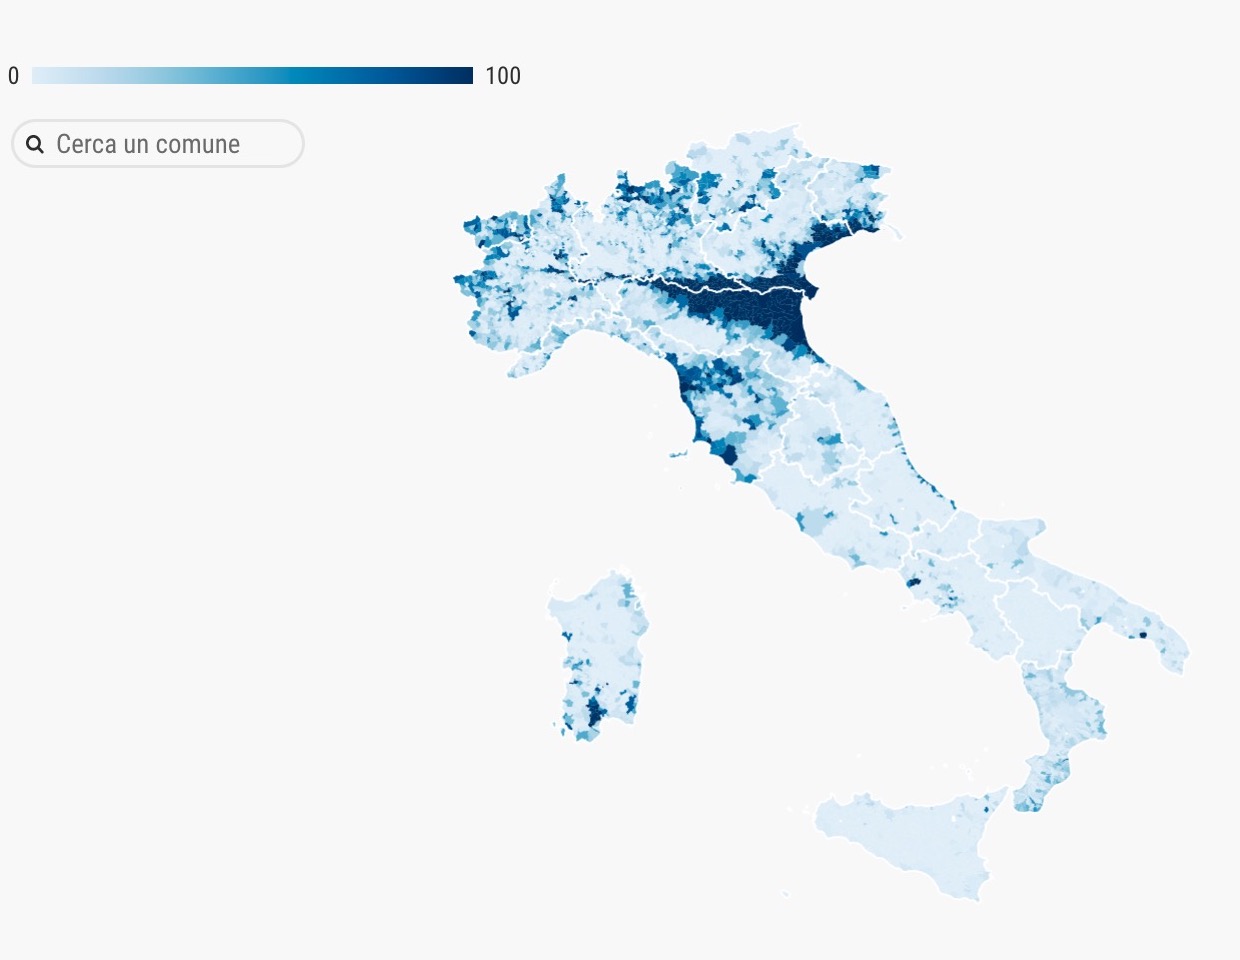 Hochwasserrisiko in Italien